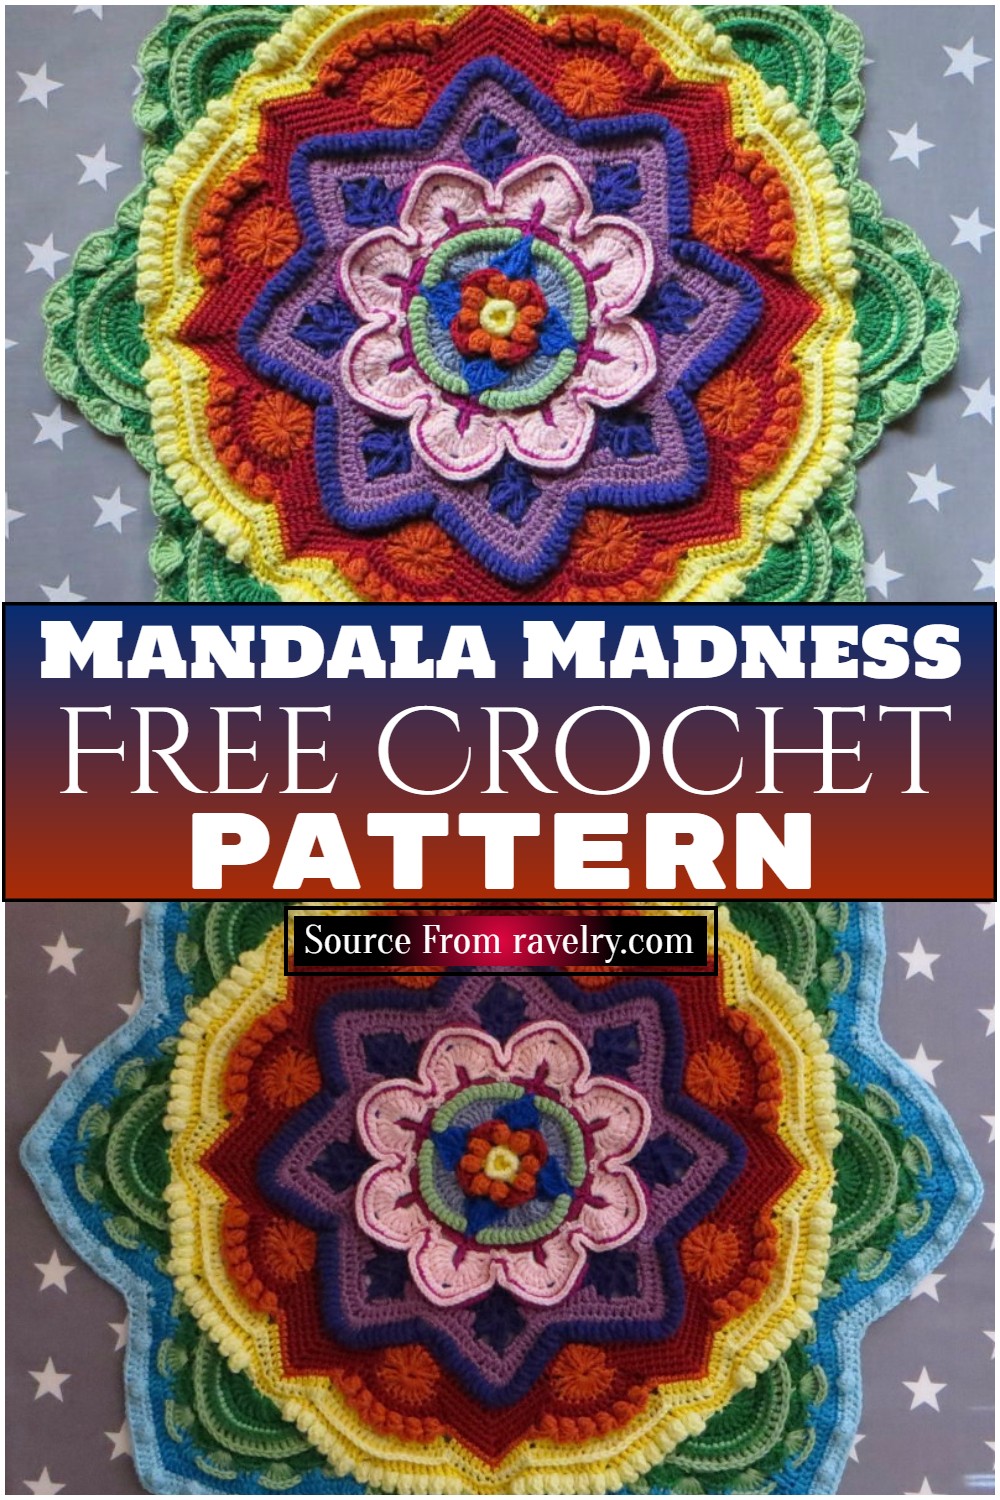 Free Crochet Mandala Madness Pattern